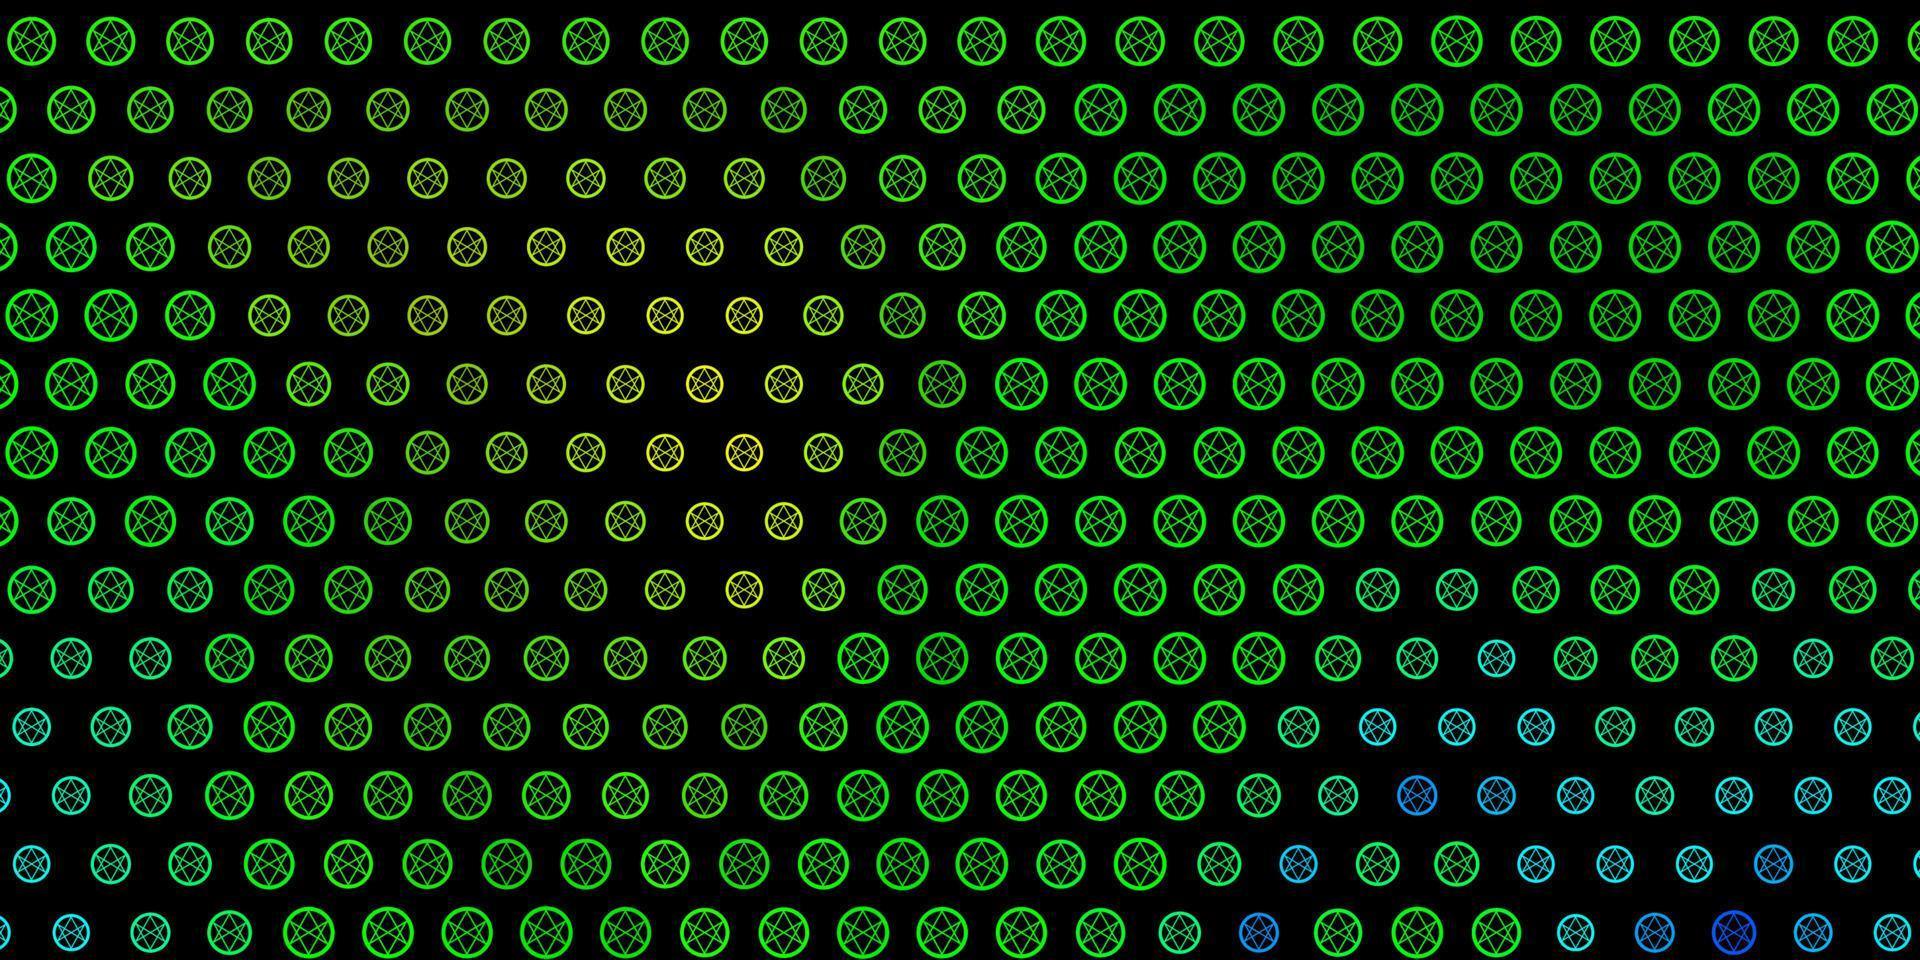 dunkelblauer, grüner Vektorhintergrund mit Mysteriumsymbolen. vektor